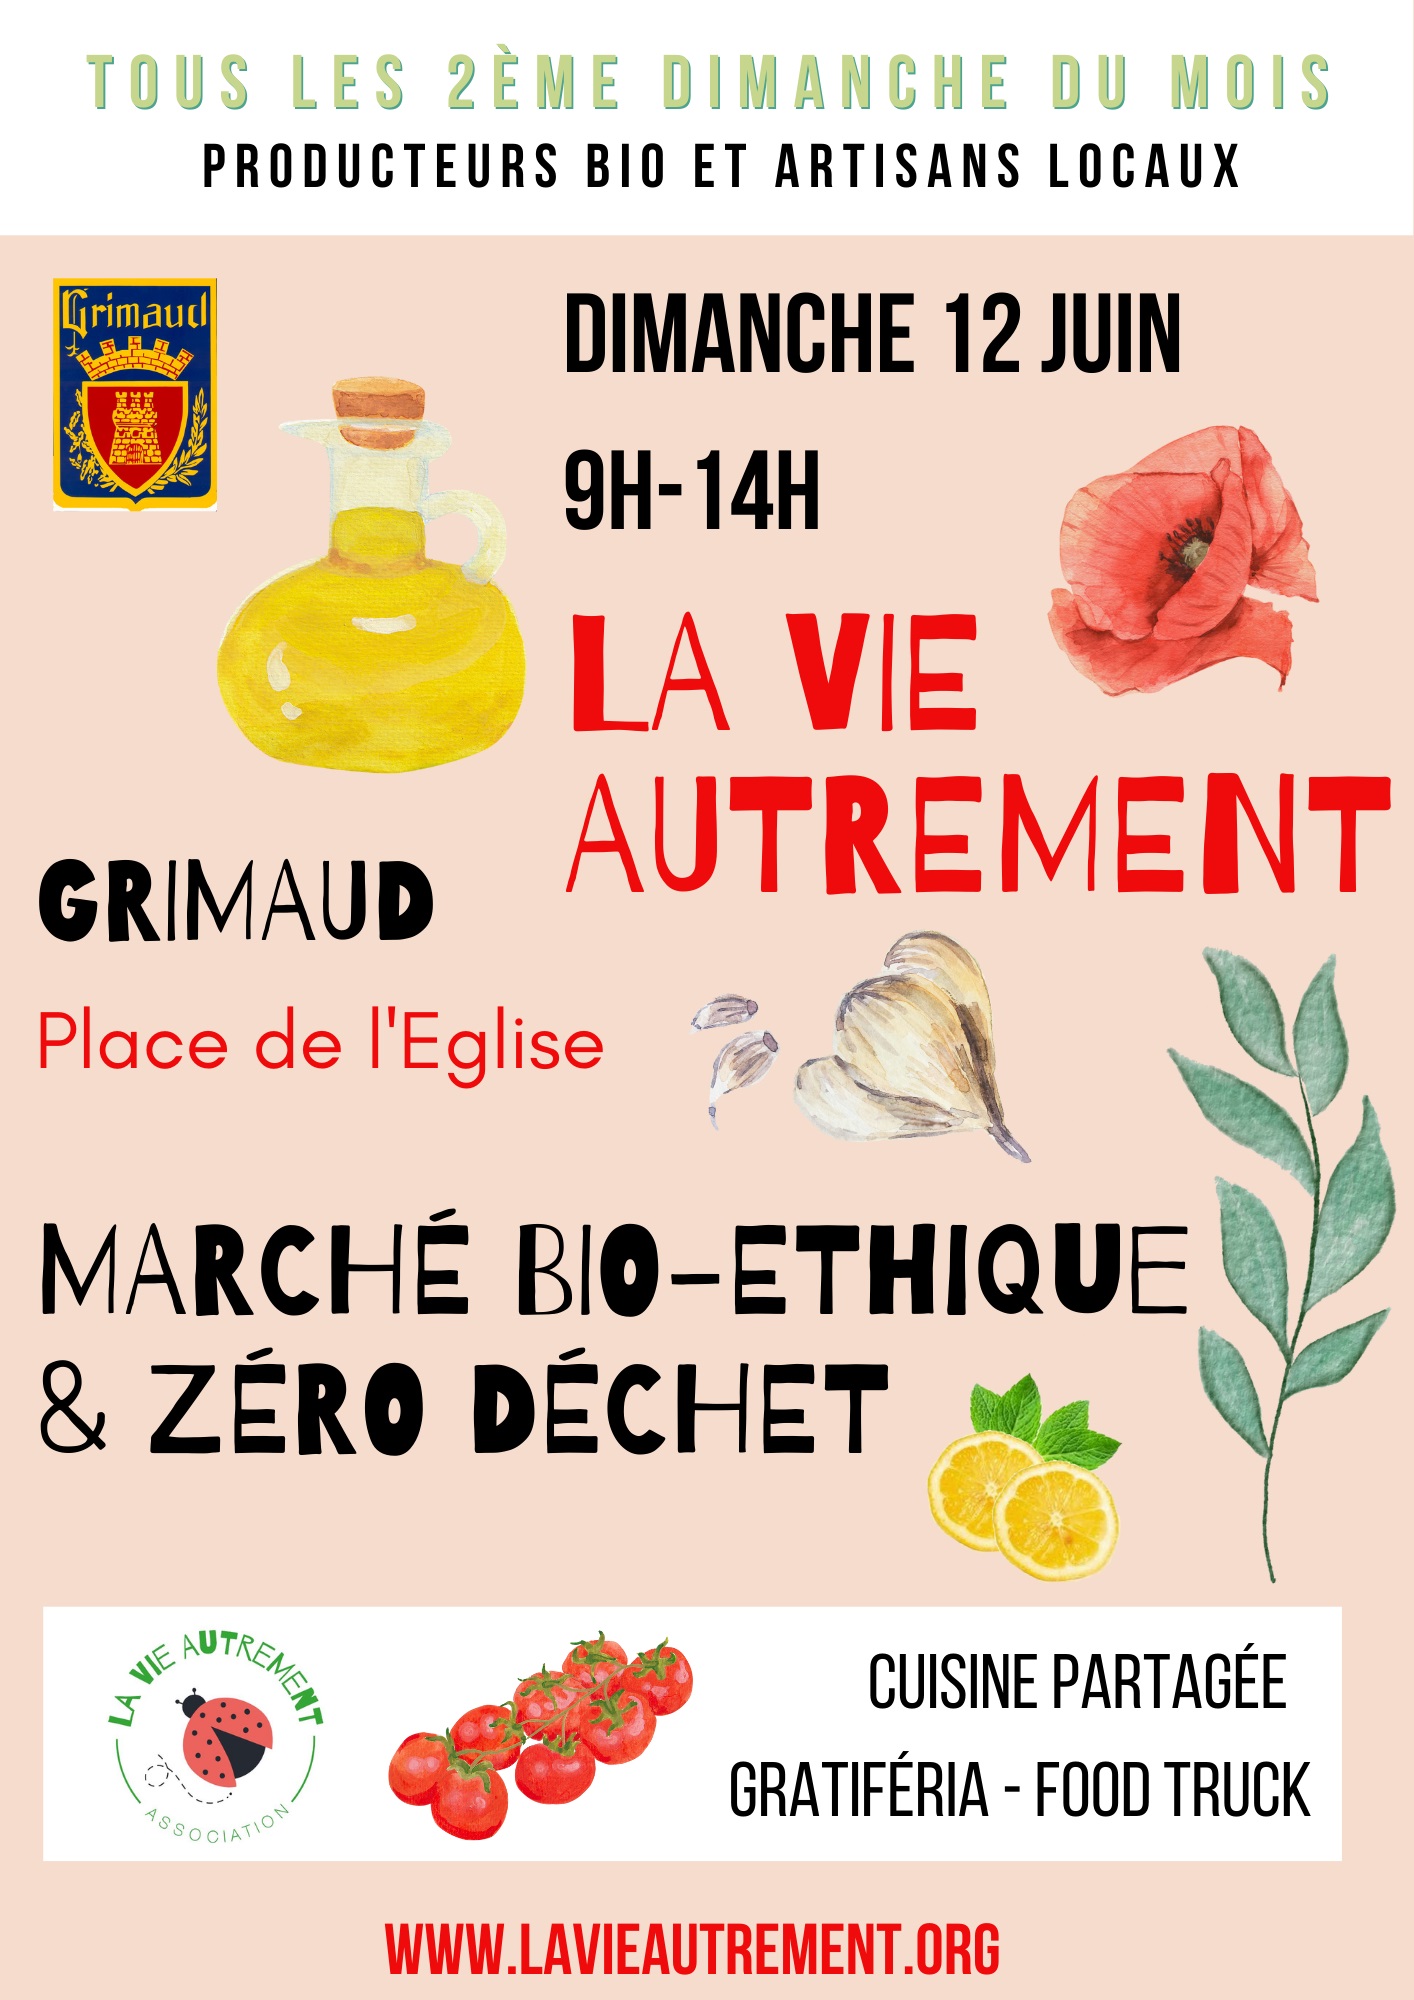 Sunday, June 12, 2022 - organic market place de l'église